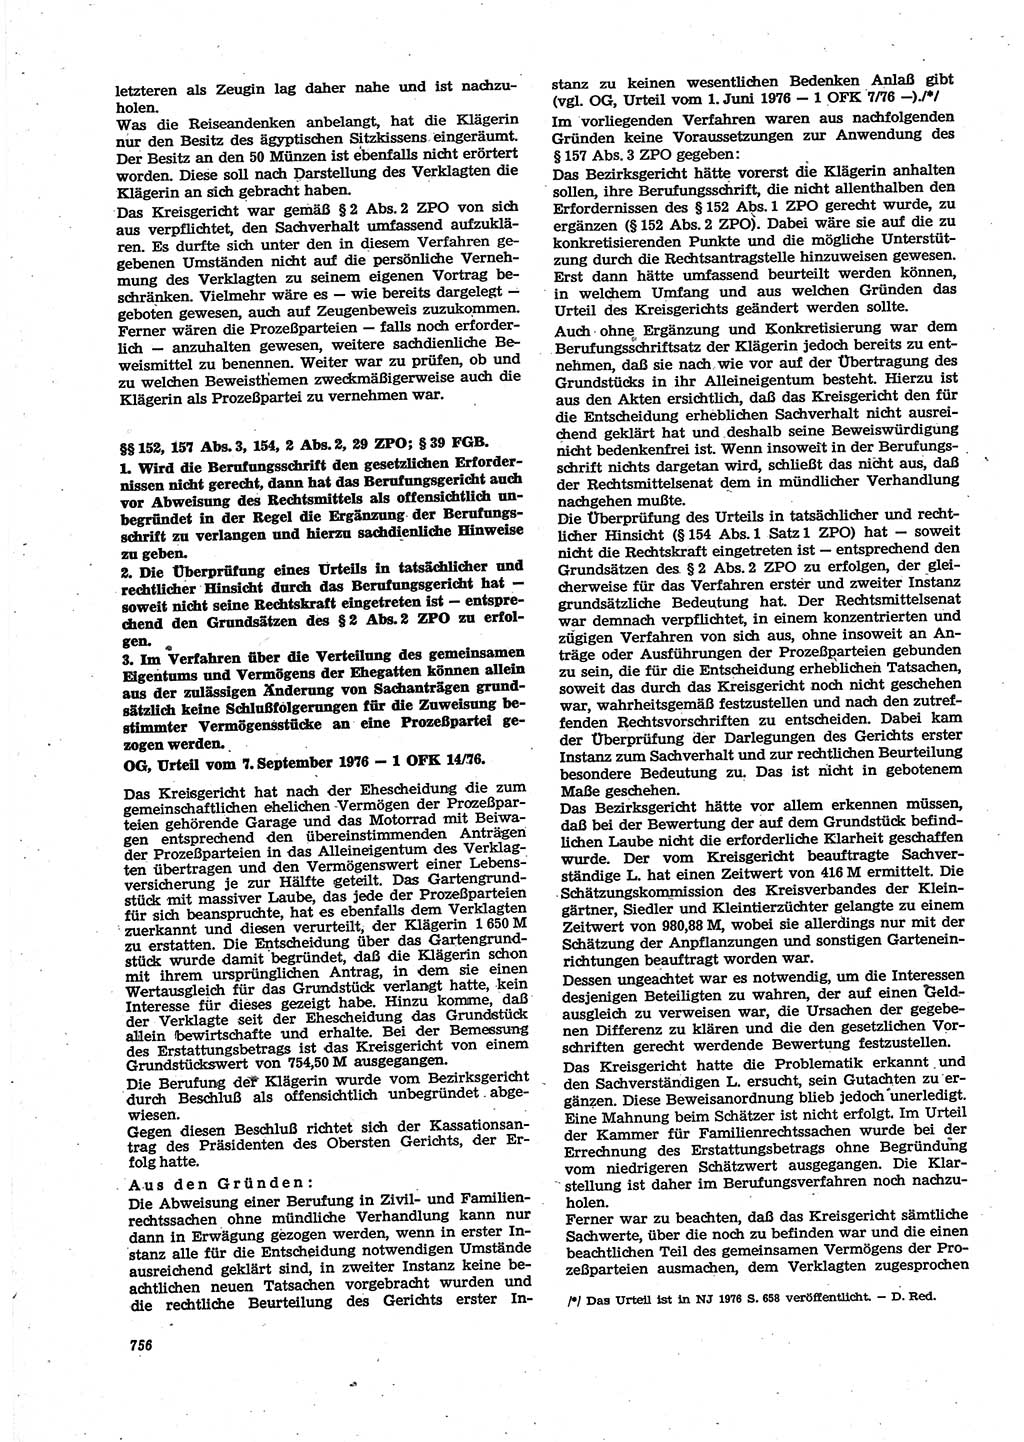 Neue Justiz (NJ), Zeitschrift für Recht und Rechtswissenschaft [Deutsche Demokratische Republik (DDR)], 30. Jahrgang 1976, Seite 756 (NJ DDR 1976, S. 756)